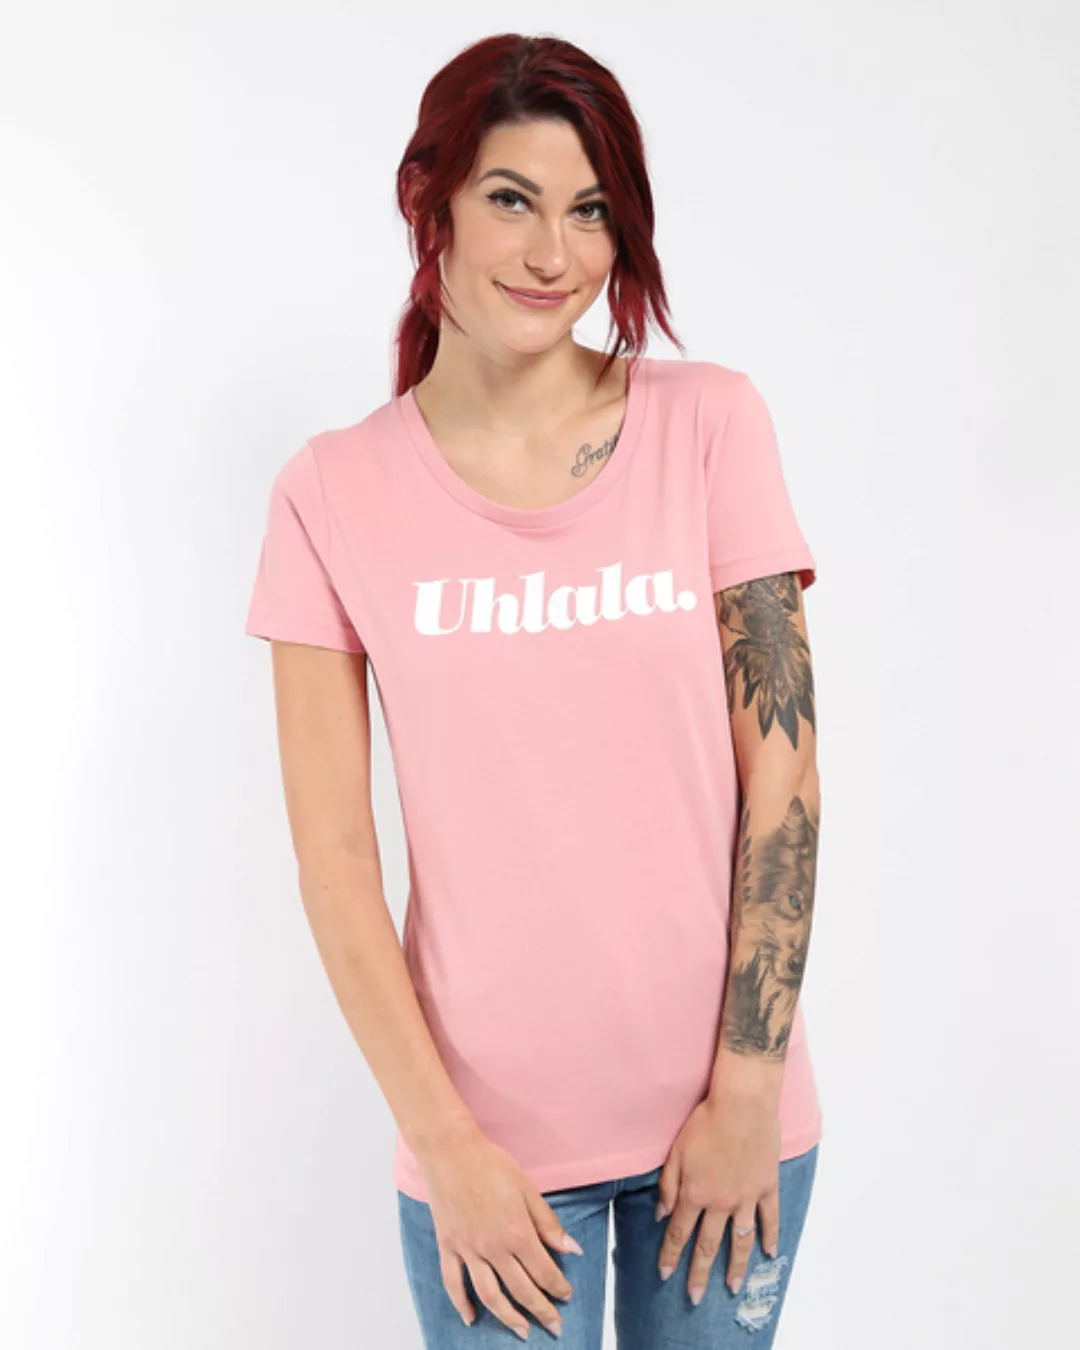 Uhlala | T-shirt Damen günstig online kaufen